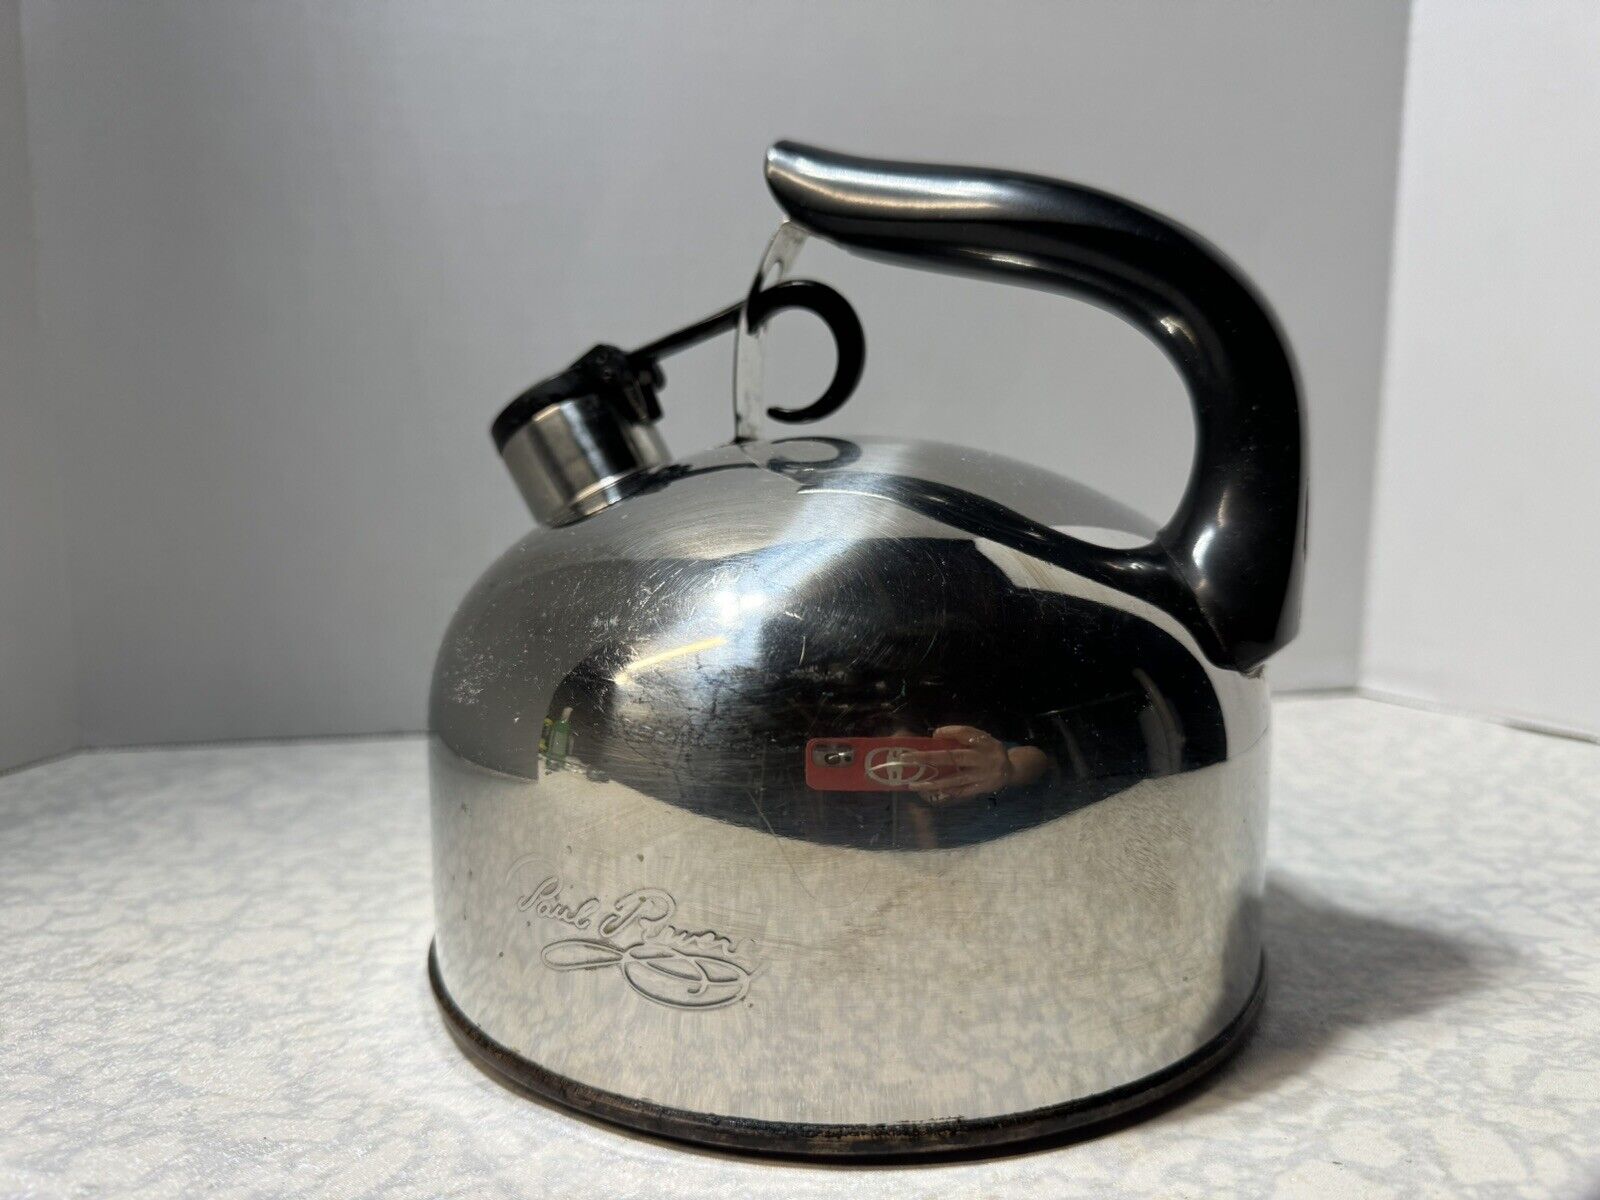 Paul Revere Ware Tea Pot Kettle Small 2qt Copper Bottom Whistling Stainless 88-C